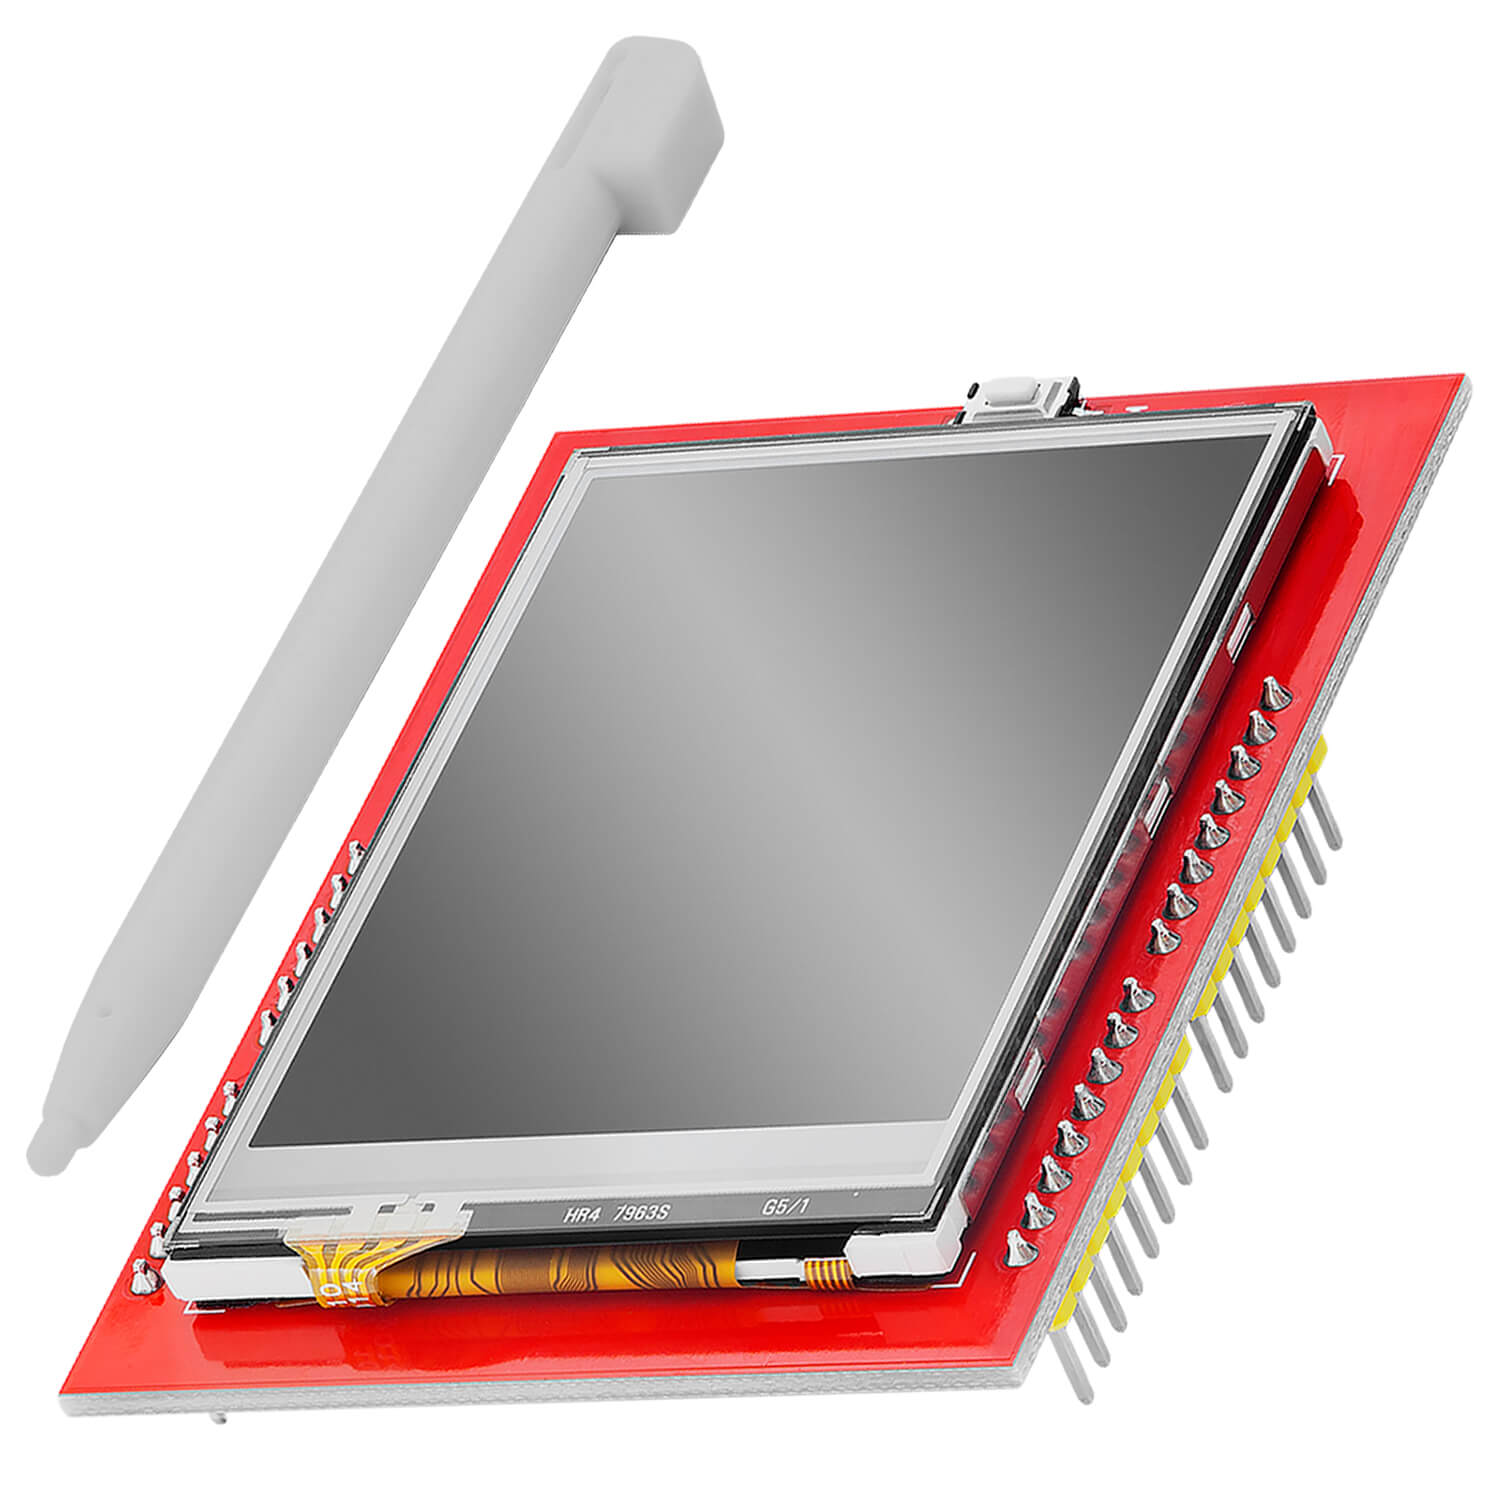 2,4 Zoll LCD TFT Touch Display - Kompatibel mit Arduino und Raspberry